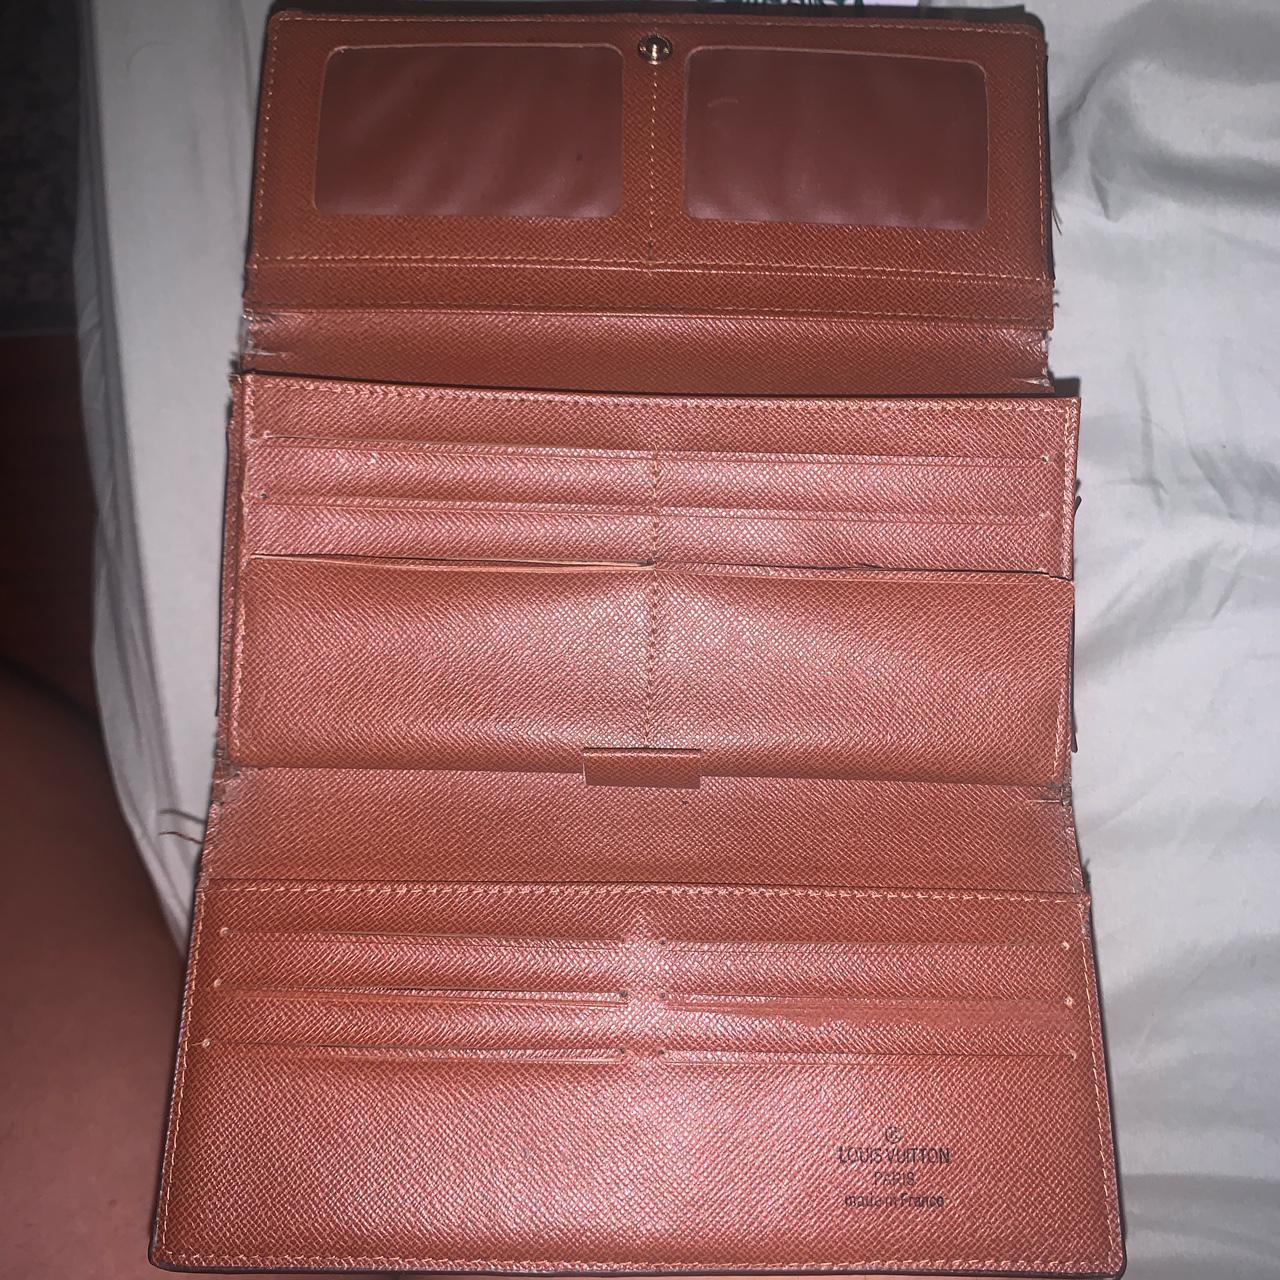 2003 Louis Vuitton Wallet Normal wear, note rip on - Depop